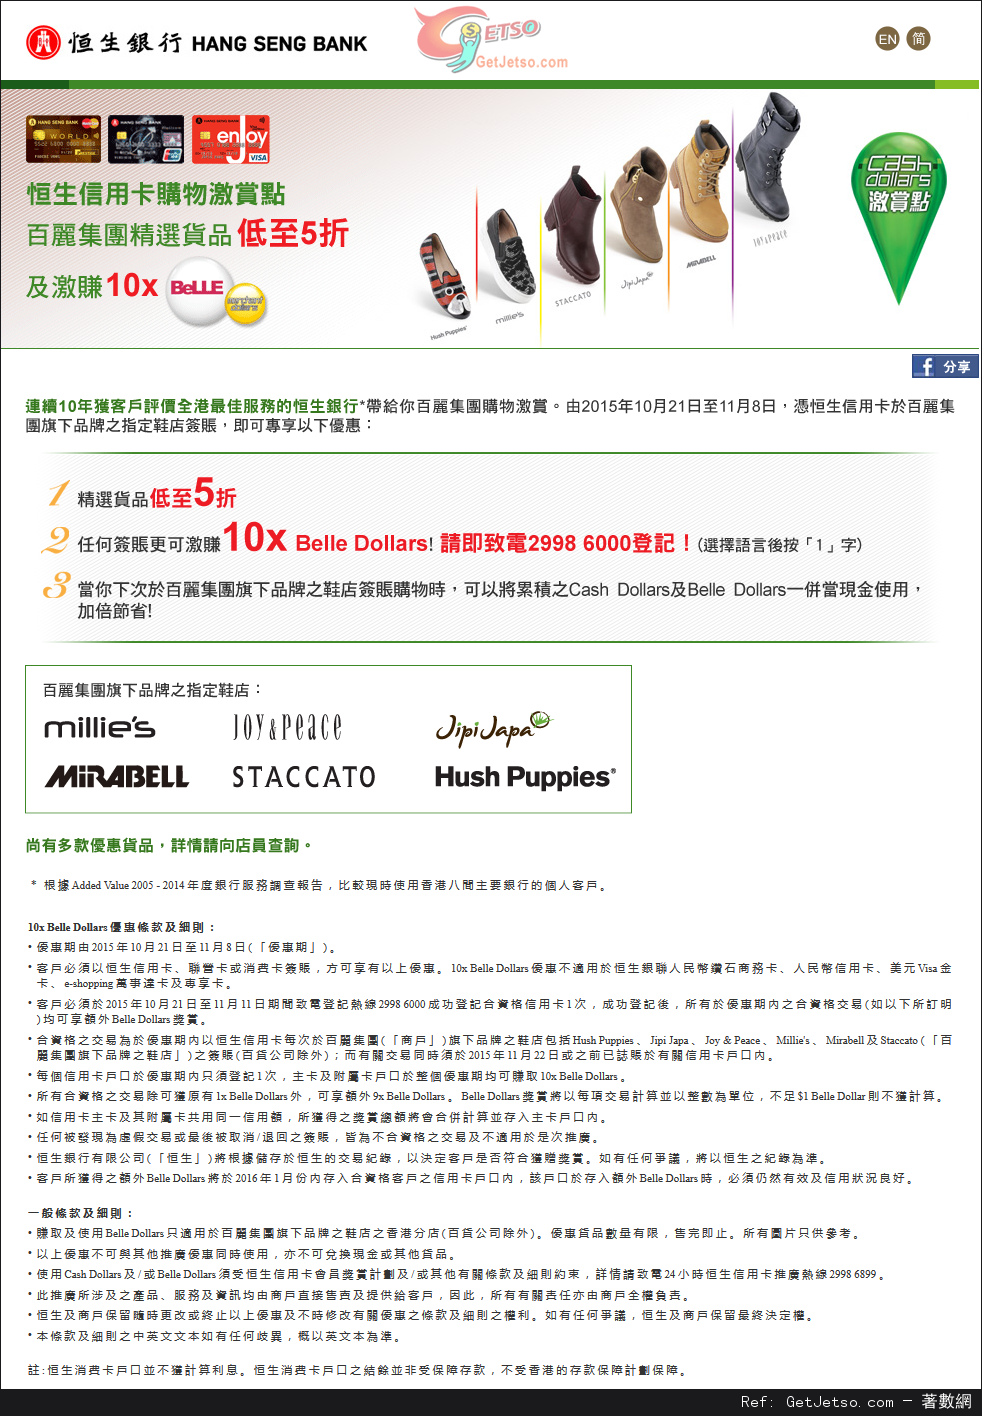 恒生信用卡享BeLLE集團之指定鞋履品牌低至半價優惠(至15年11月8日)圖片1